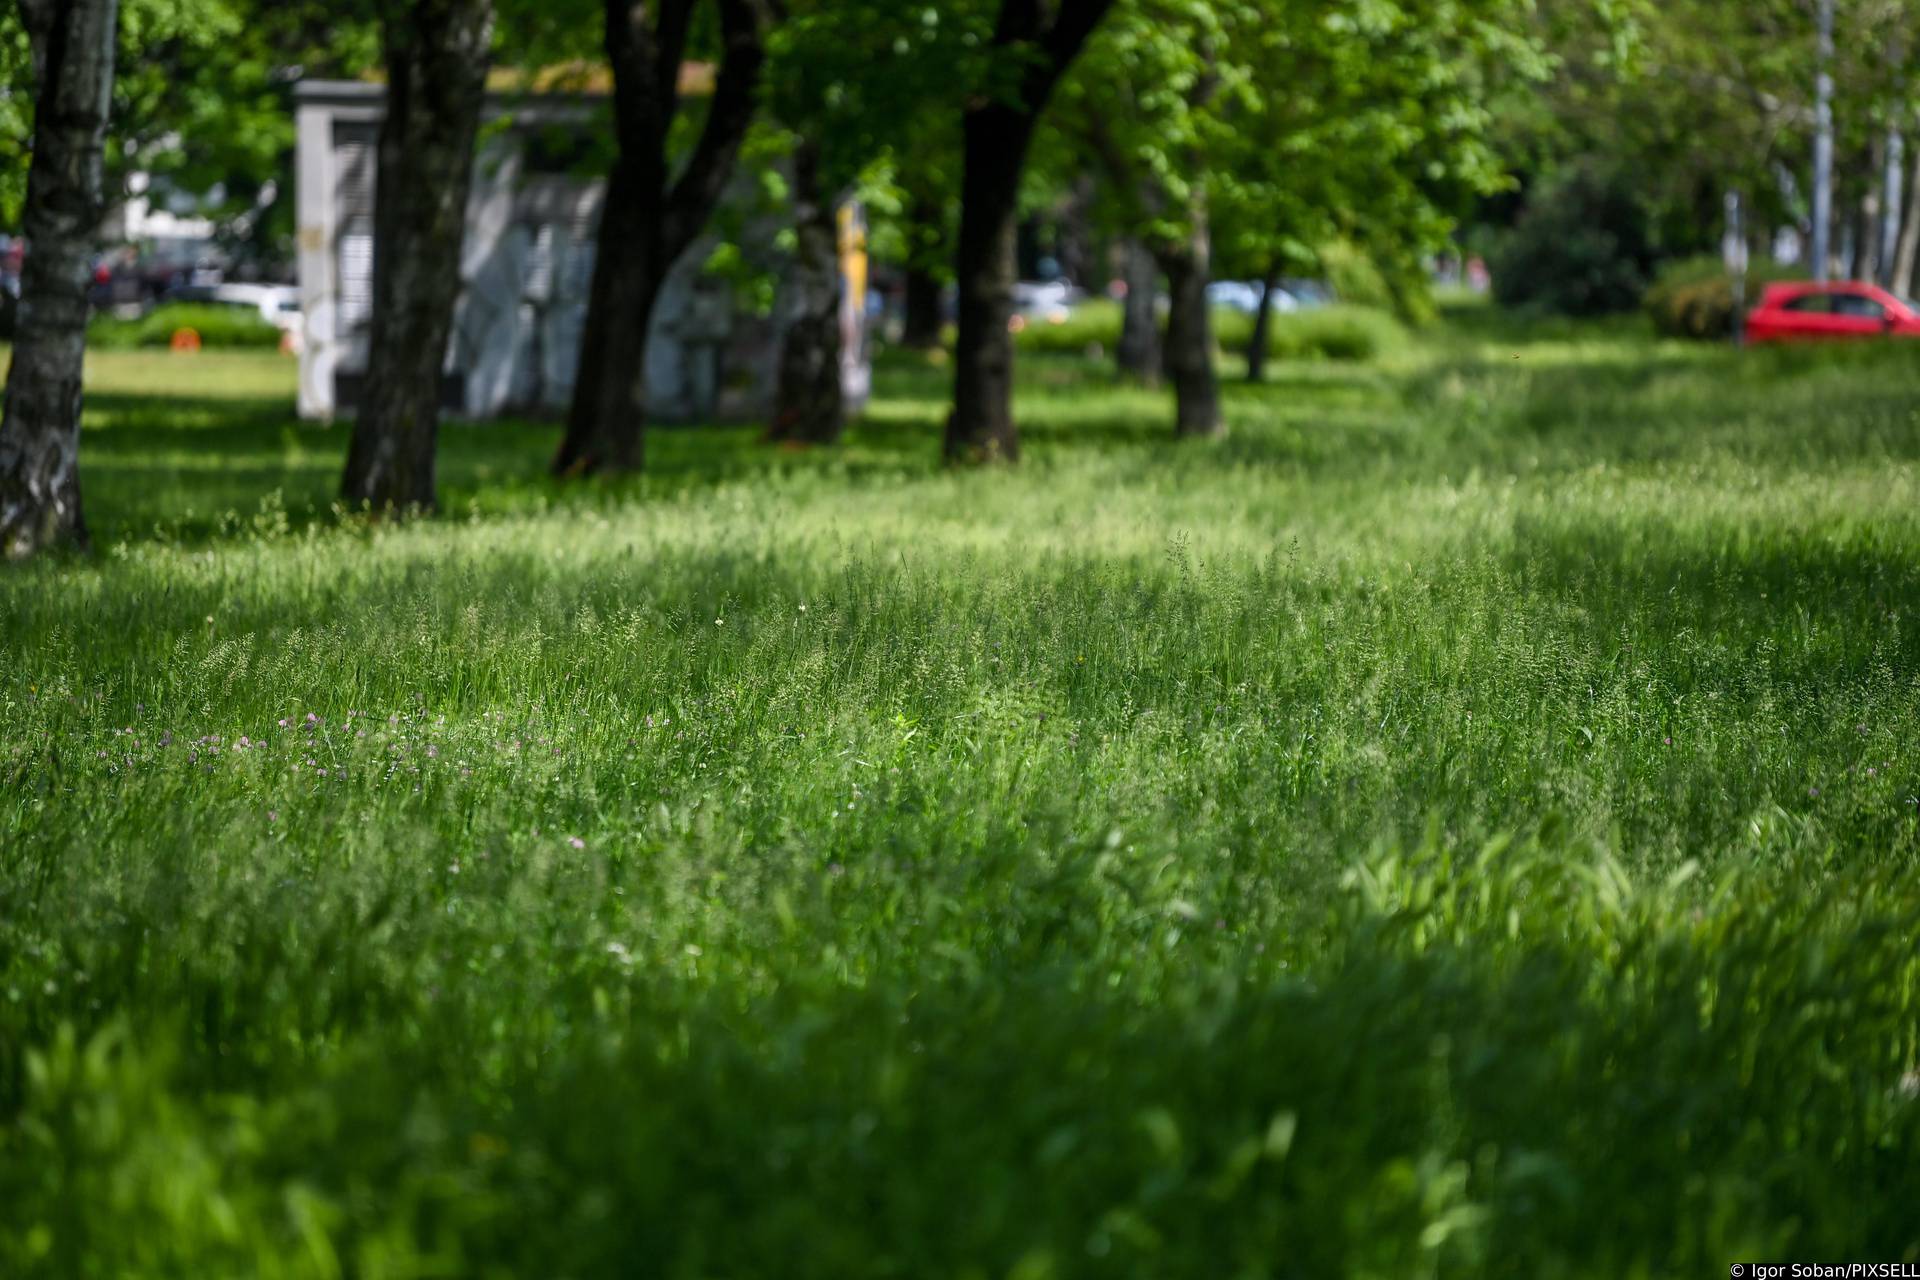 Zagreb: Nepokošena trava u Ulici grada Vukovara koja raste zbog velike količine kiše u proteklom razdoblju